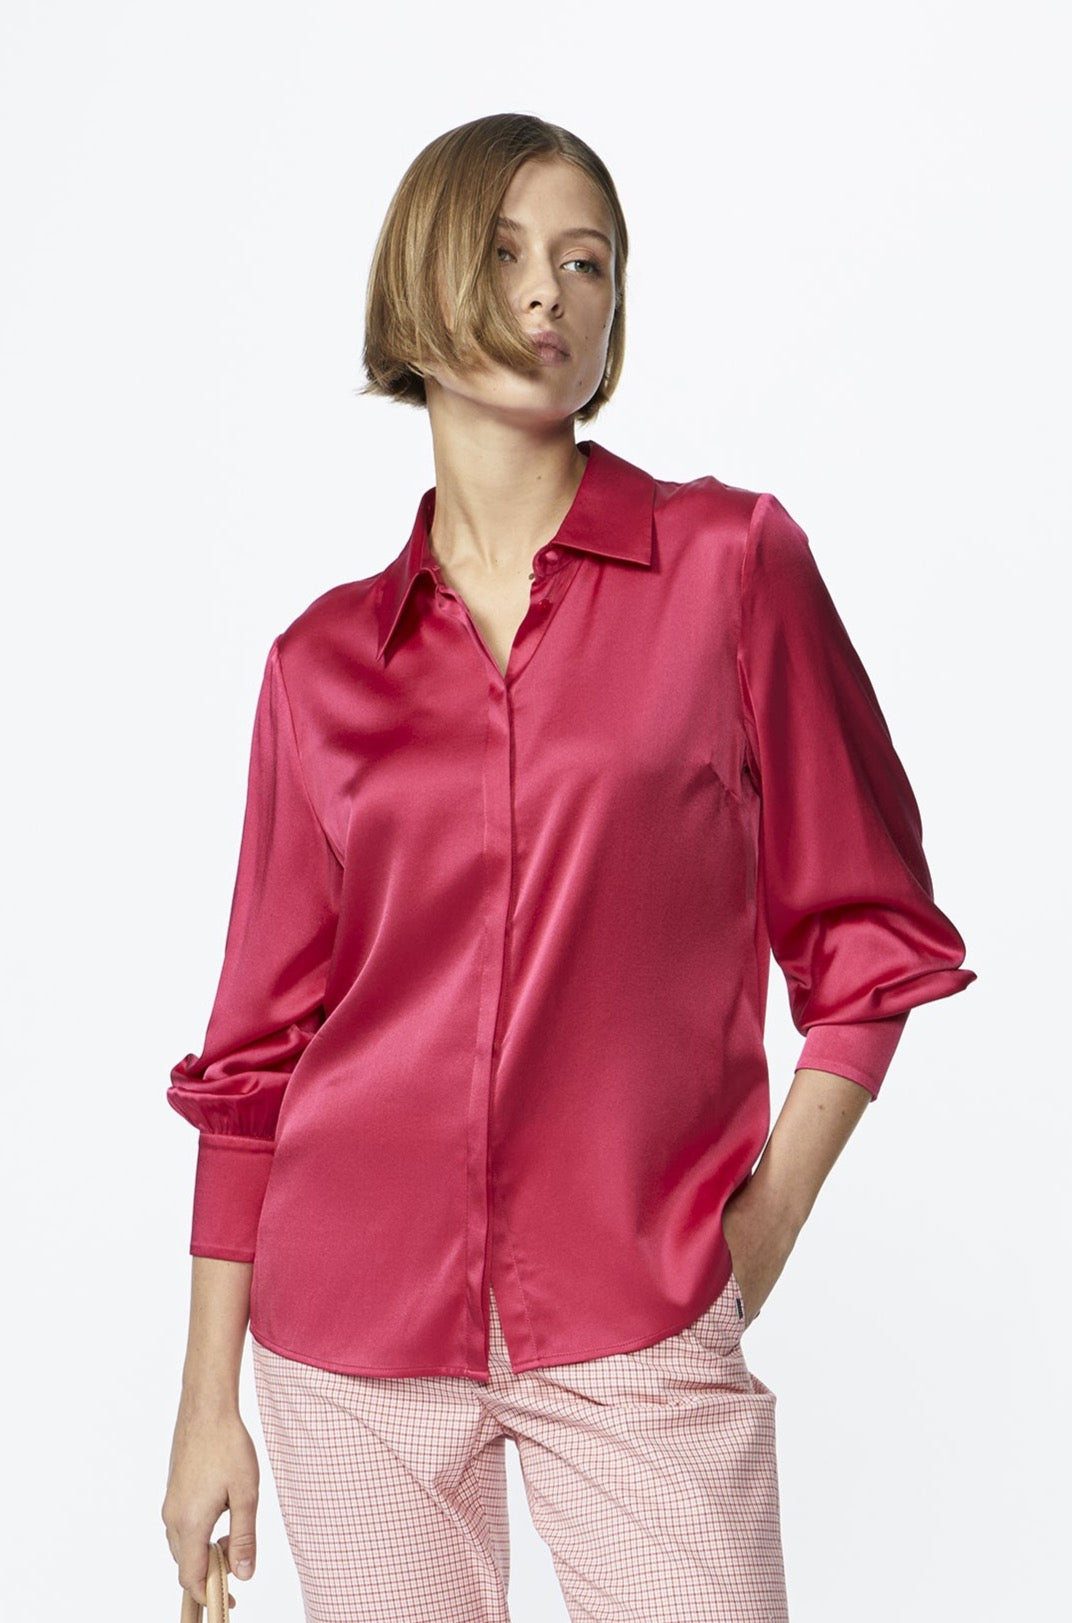 hot pink zijde blouse - xandres - - grote maten - dameskleding - kledingwinkel - herent - leuven